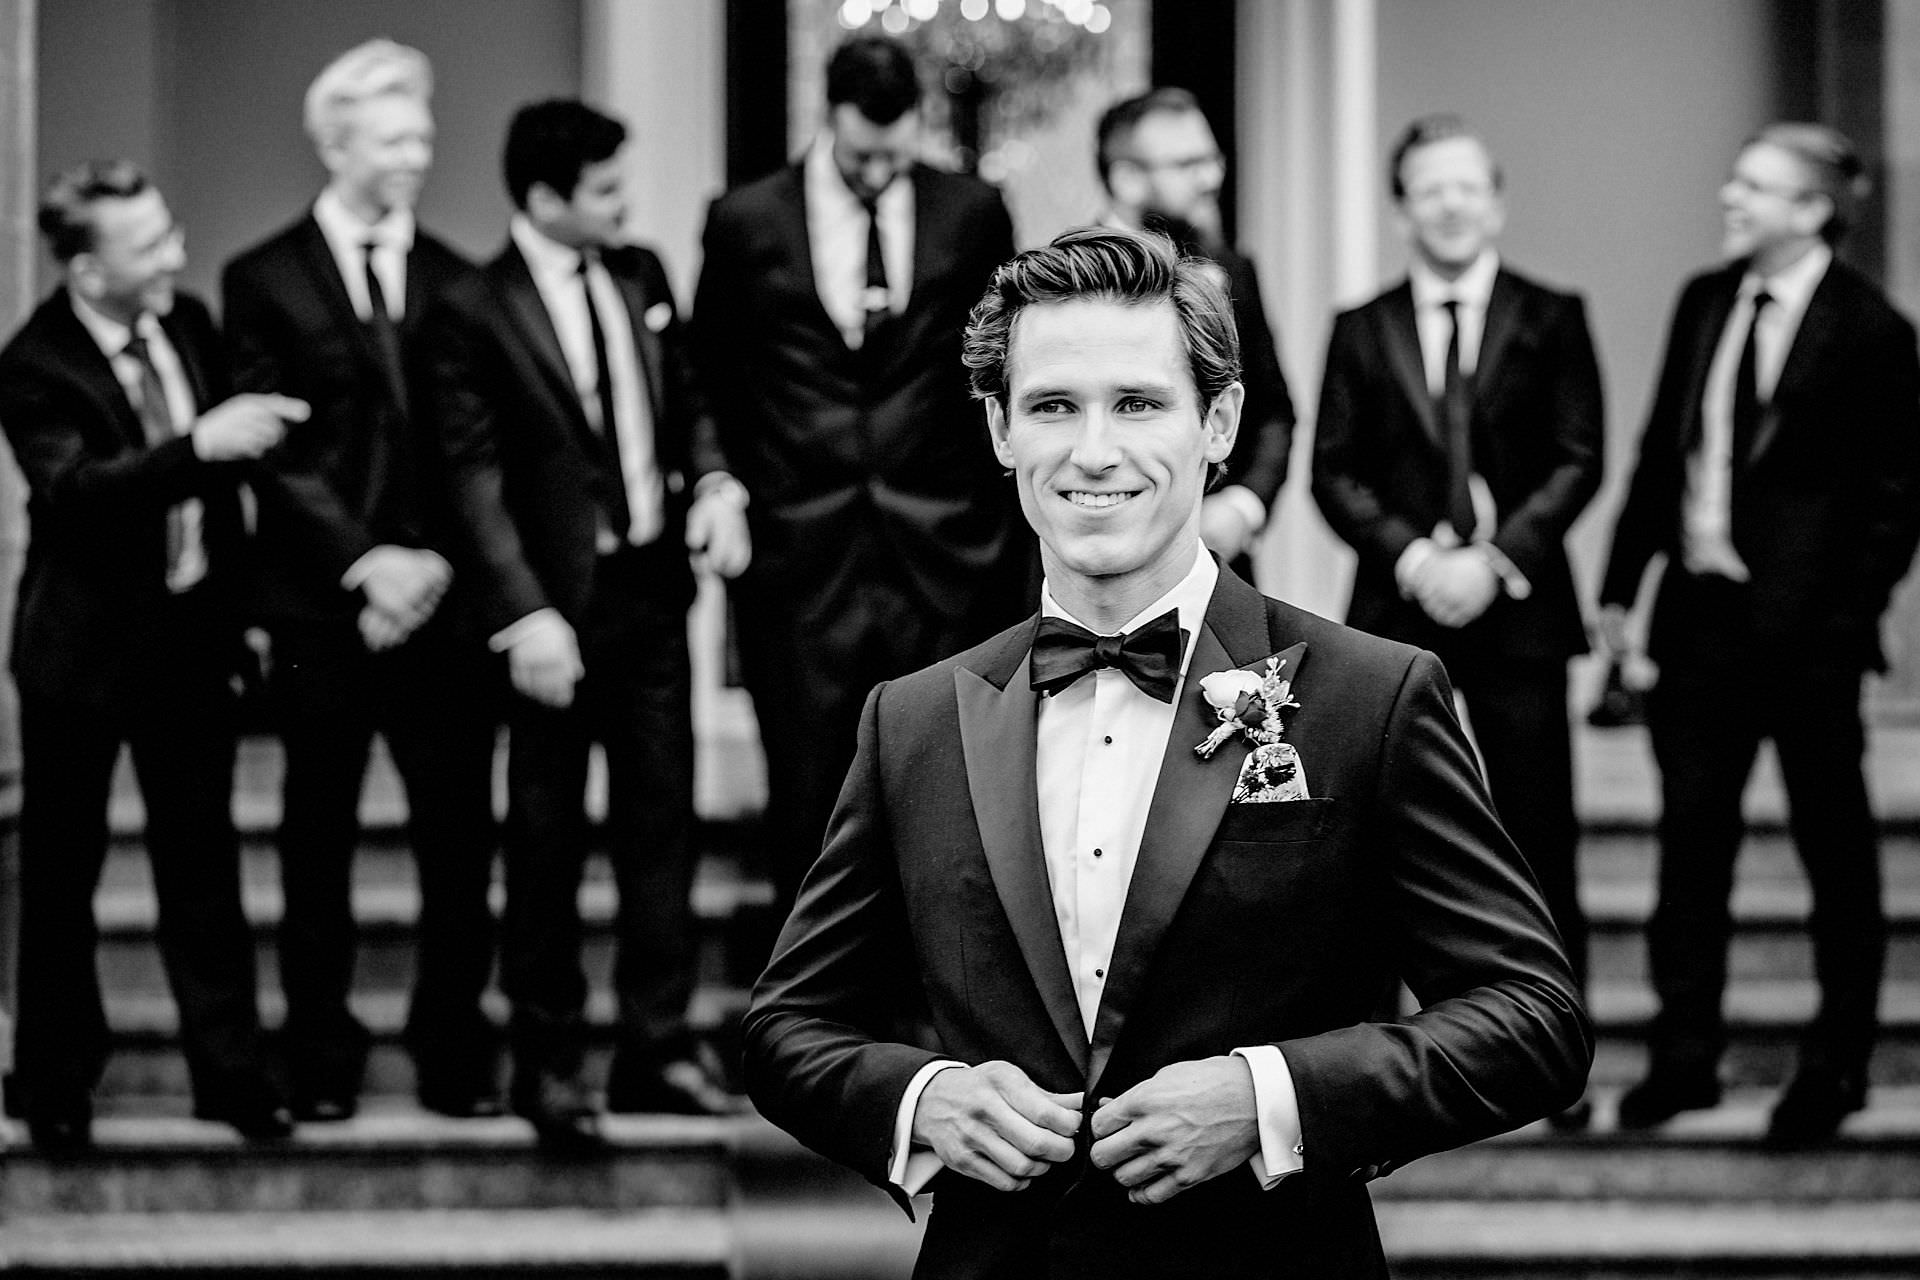 black tie, groom and ushers, groomsmen and best man